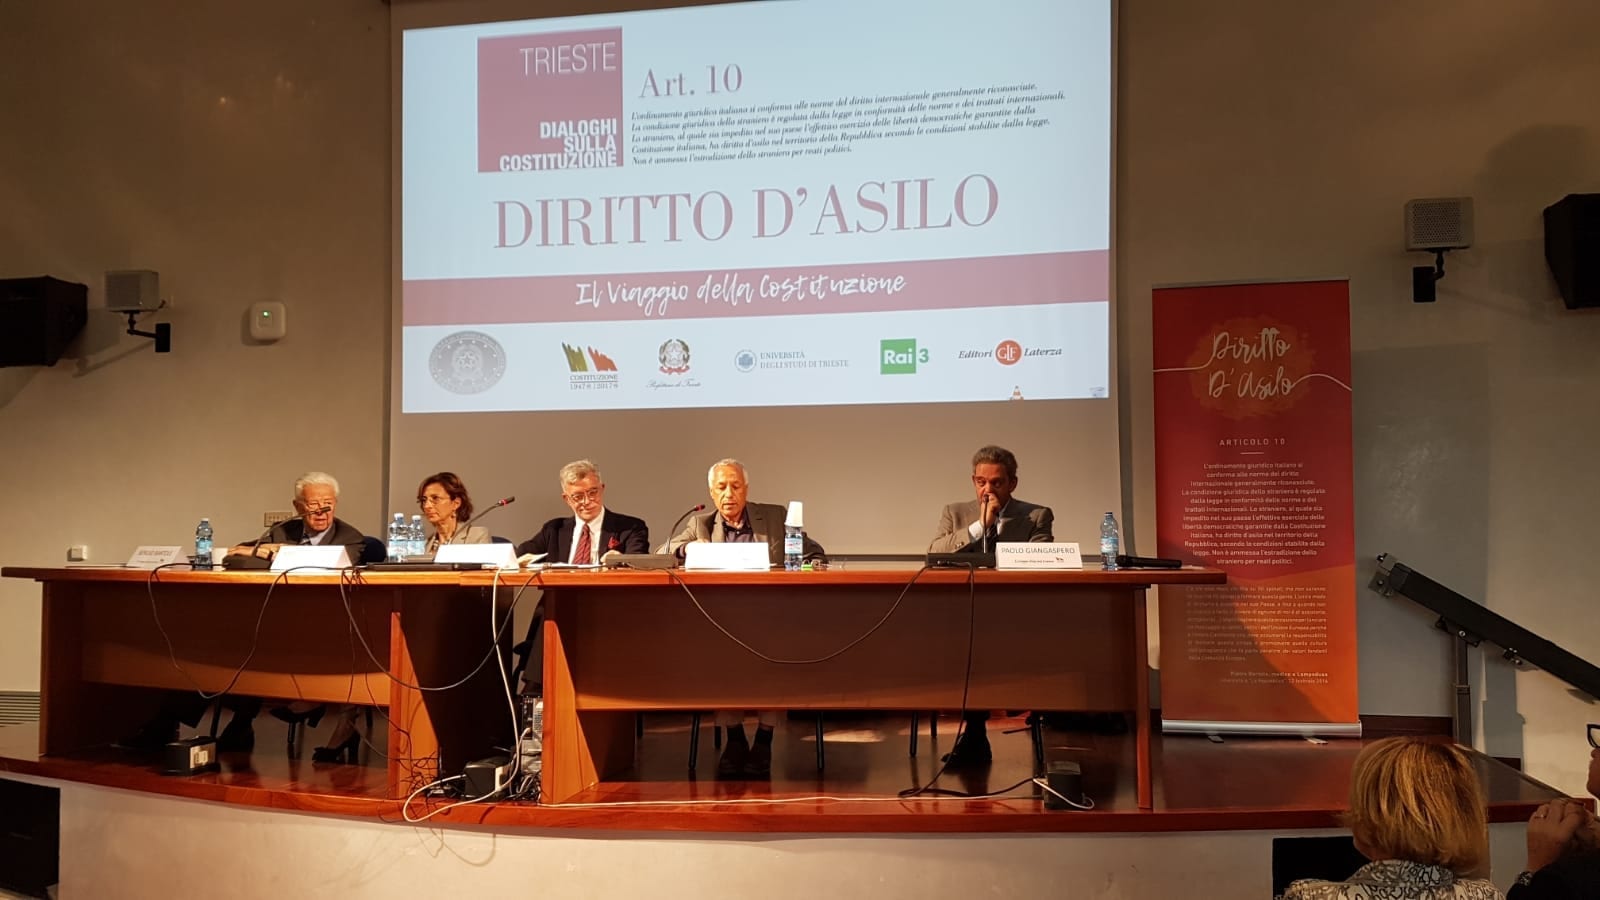 “Dialoghi sulla Costituzione”: a Trieste il confronto su Diritto d’asilo